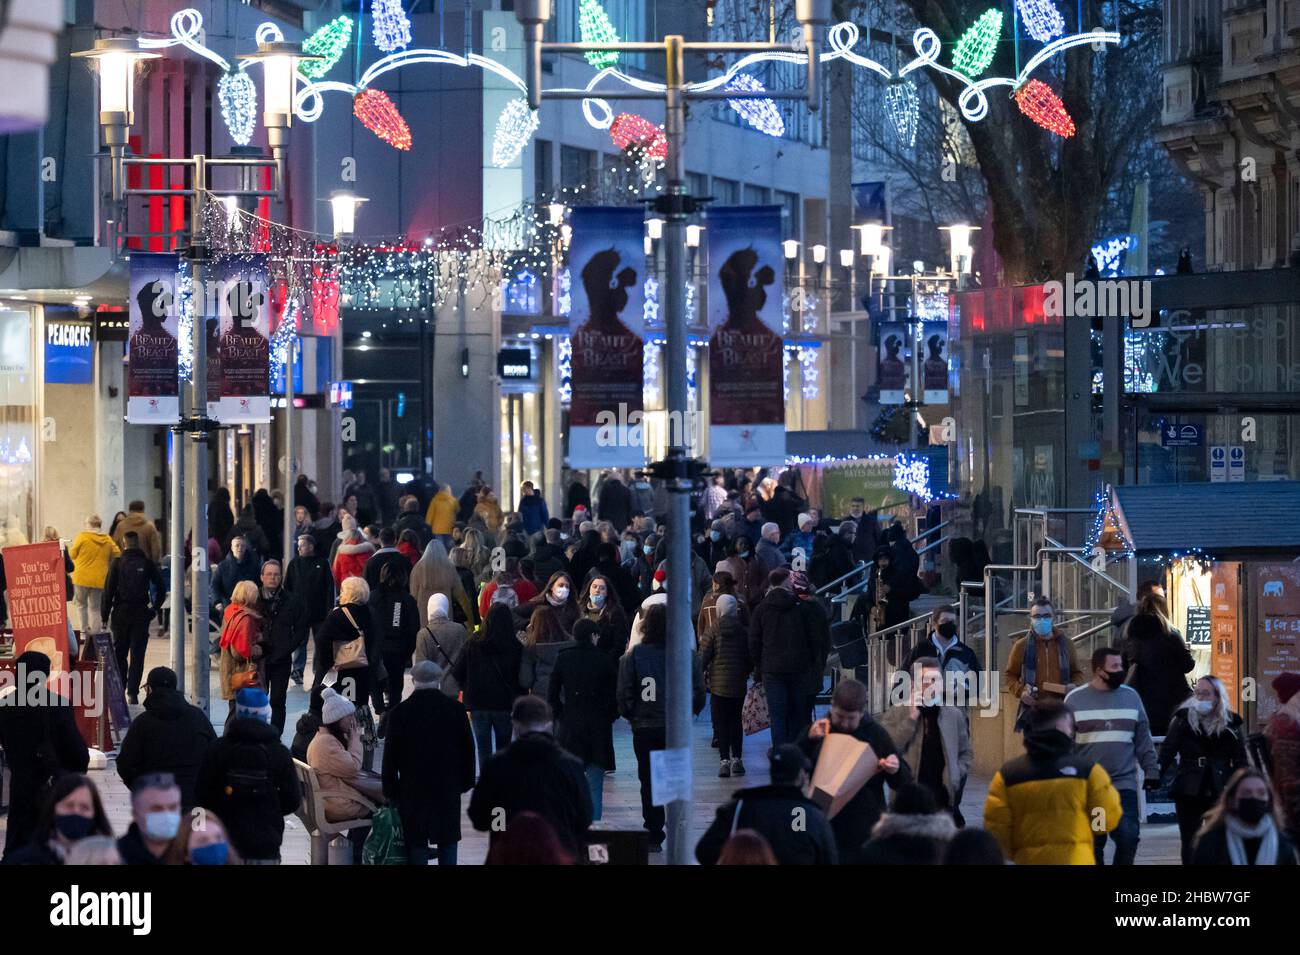 CARDIFF, GALLES - 21 DICEMBRE: Shopping natalizio su Queen Street il 21 dicembre 2021 a Cardiff, Galles. Oggi in Galles sono stati registrati 204 casi della variante del coronavirus Omicron, portando il totale attuale a 640. Foto Stock